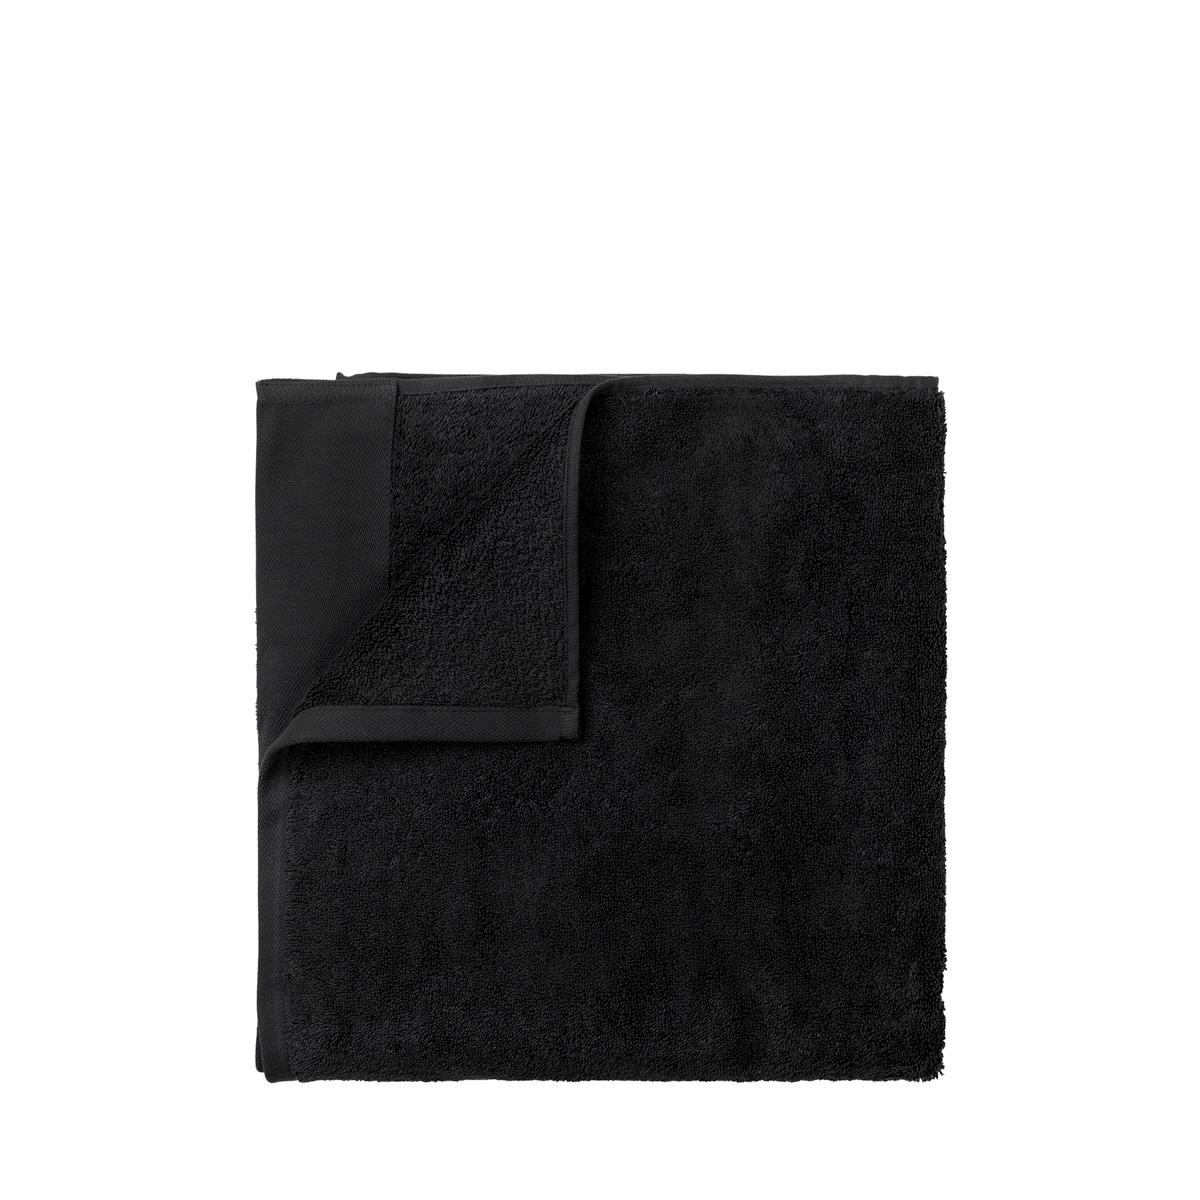 Set 2 Gästehandtücher -RIVA- Black. Material: Baumwolle. Von Blomus.